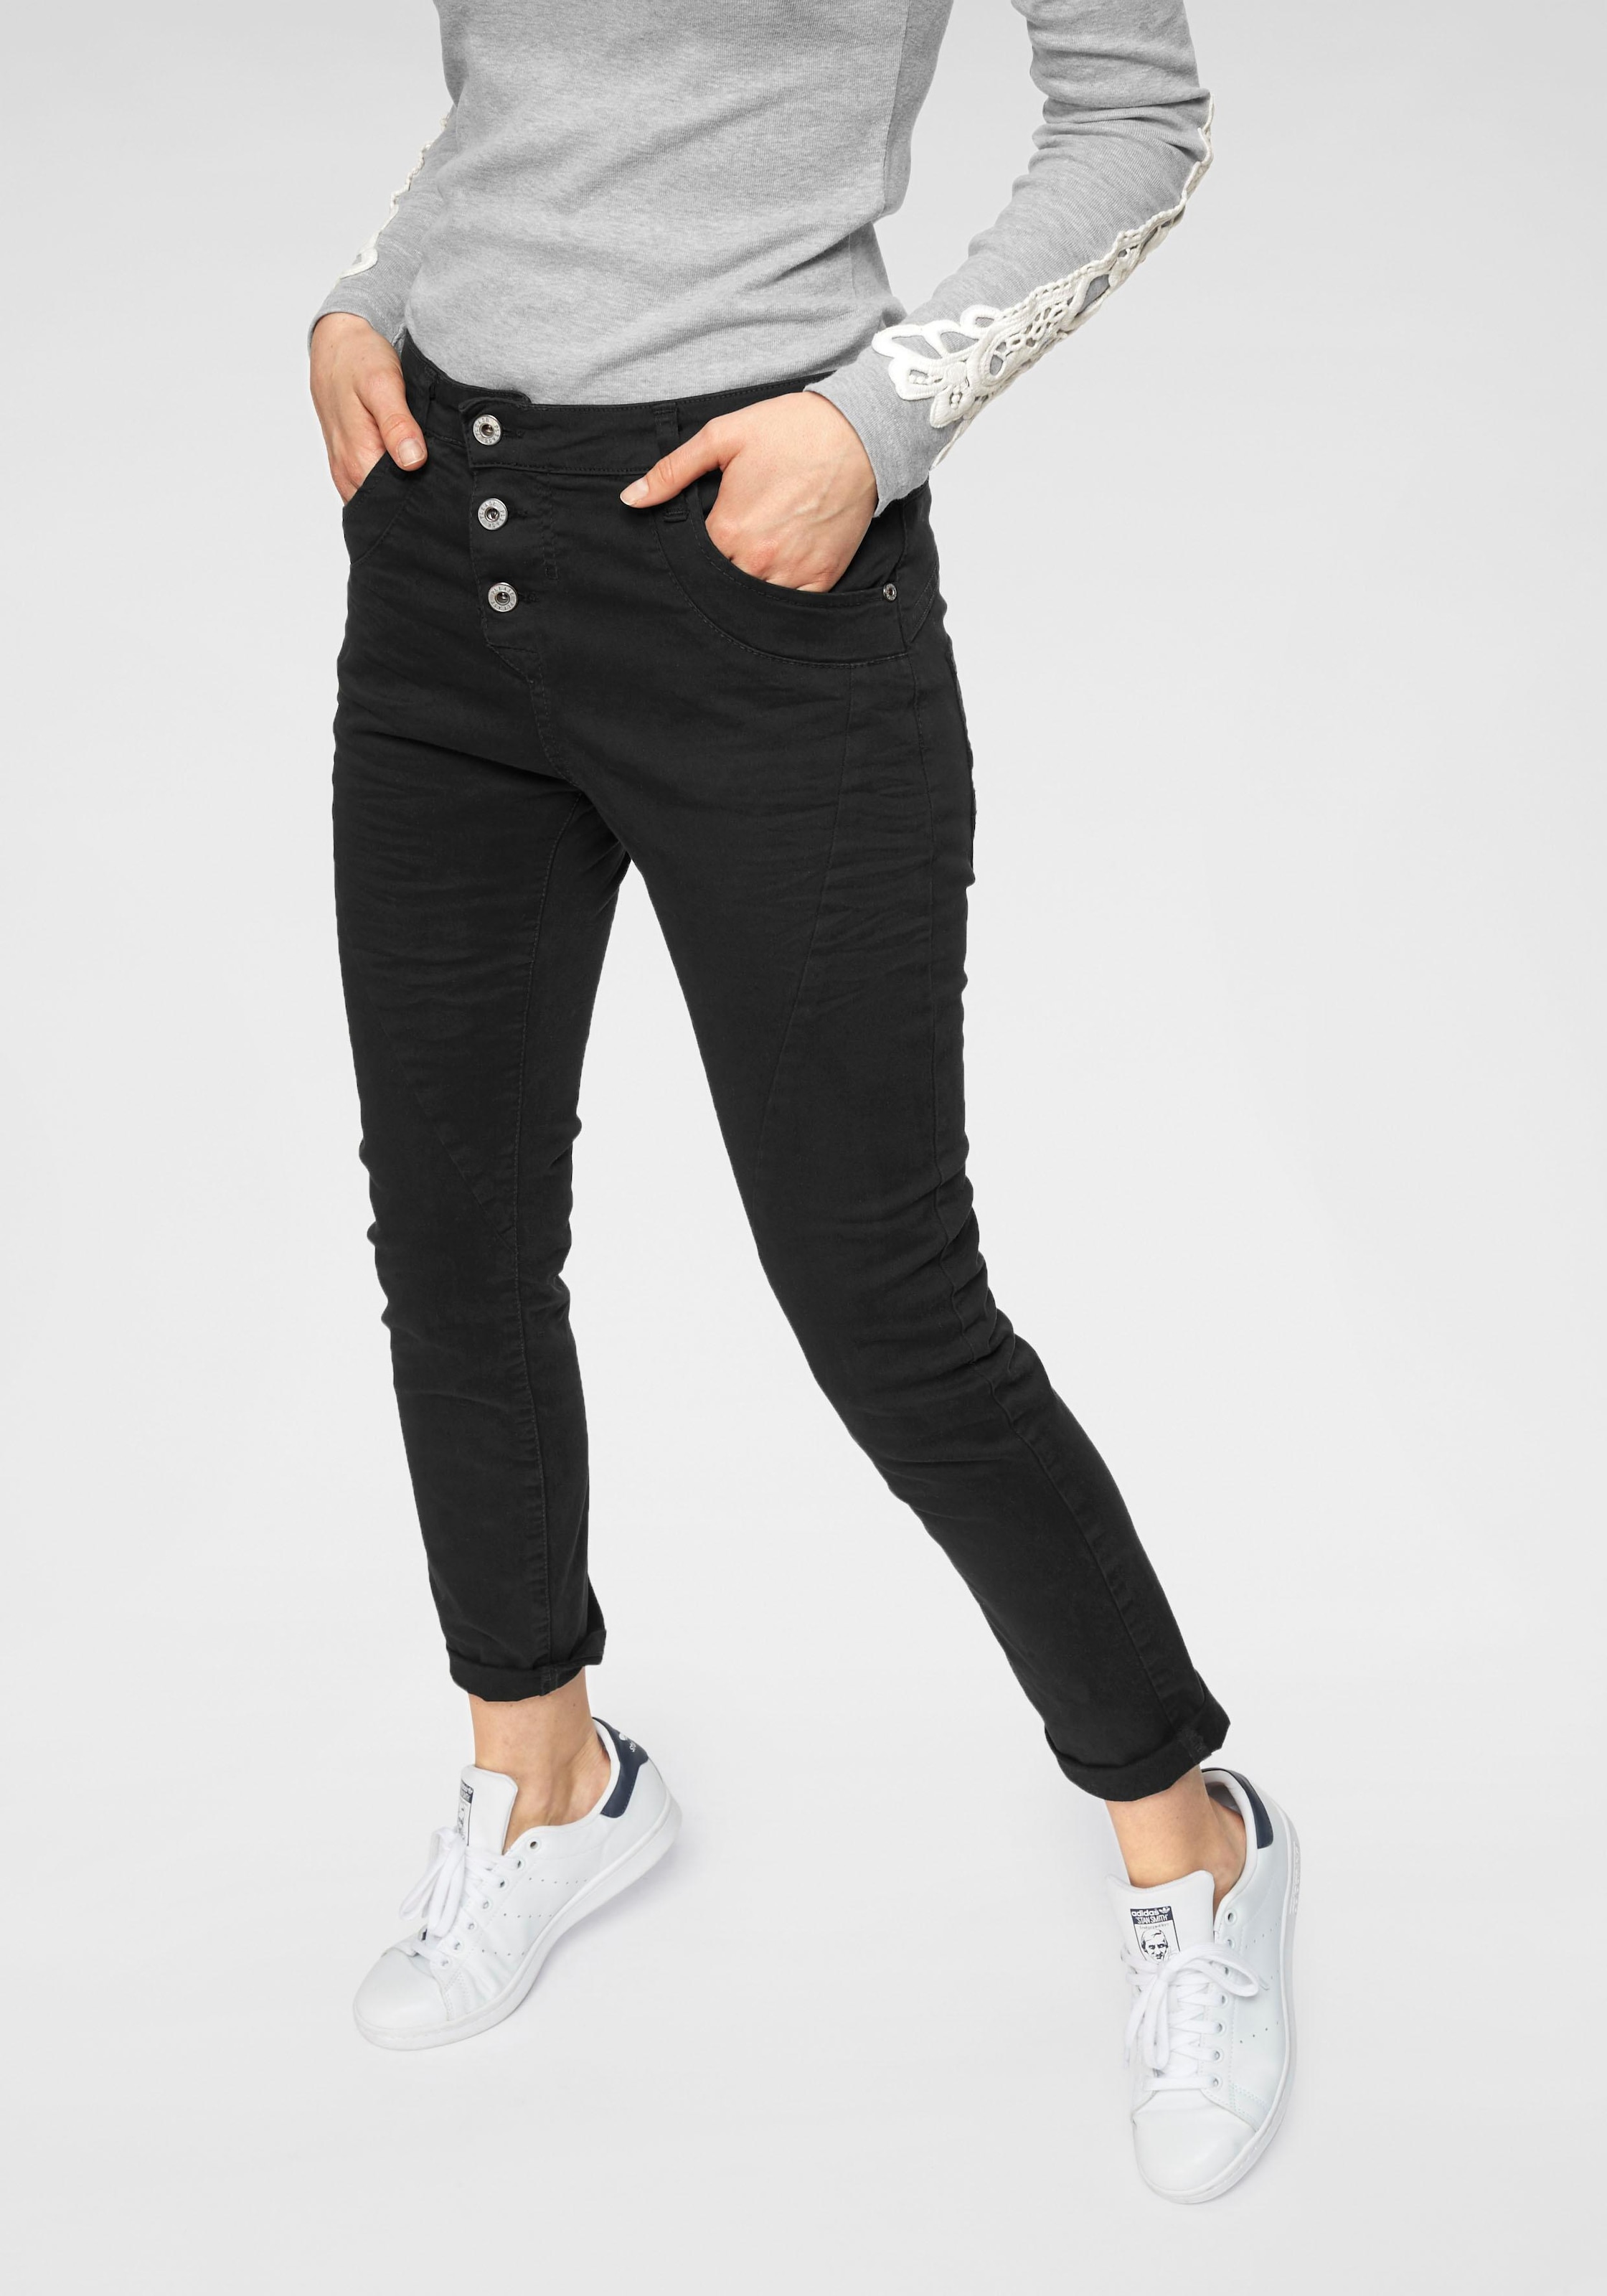 Optik Crinkle in Please Jeans bequem Bein Boyfriend und »P78A«, 5-Pocket-Jeans leichter lässige kaufen krempelbarem Jeans